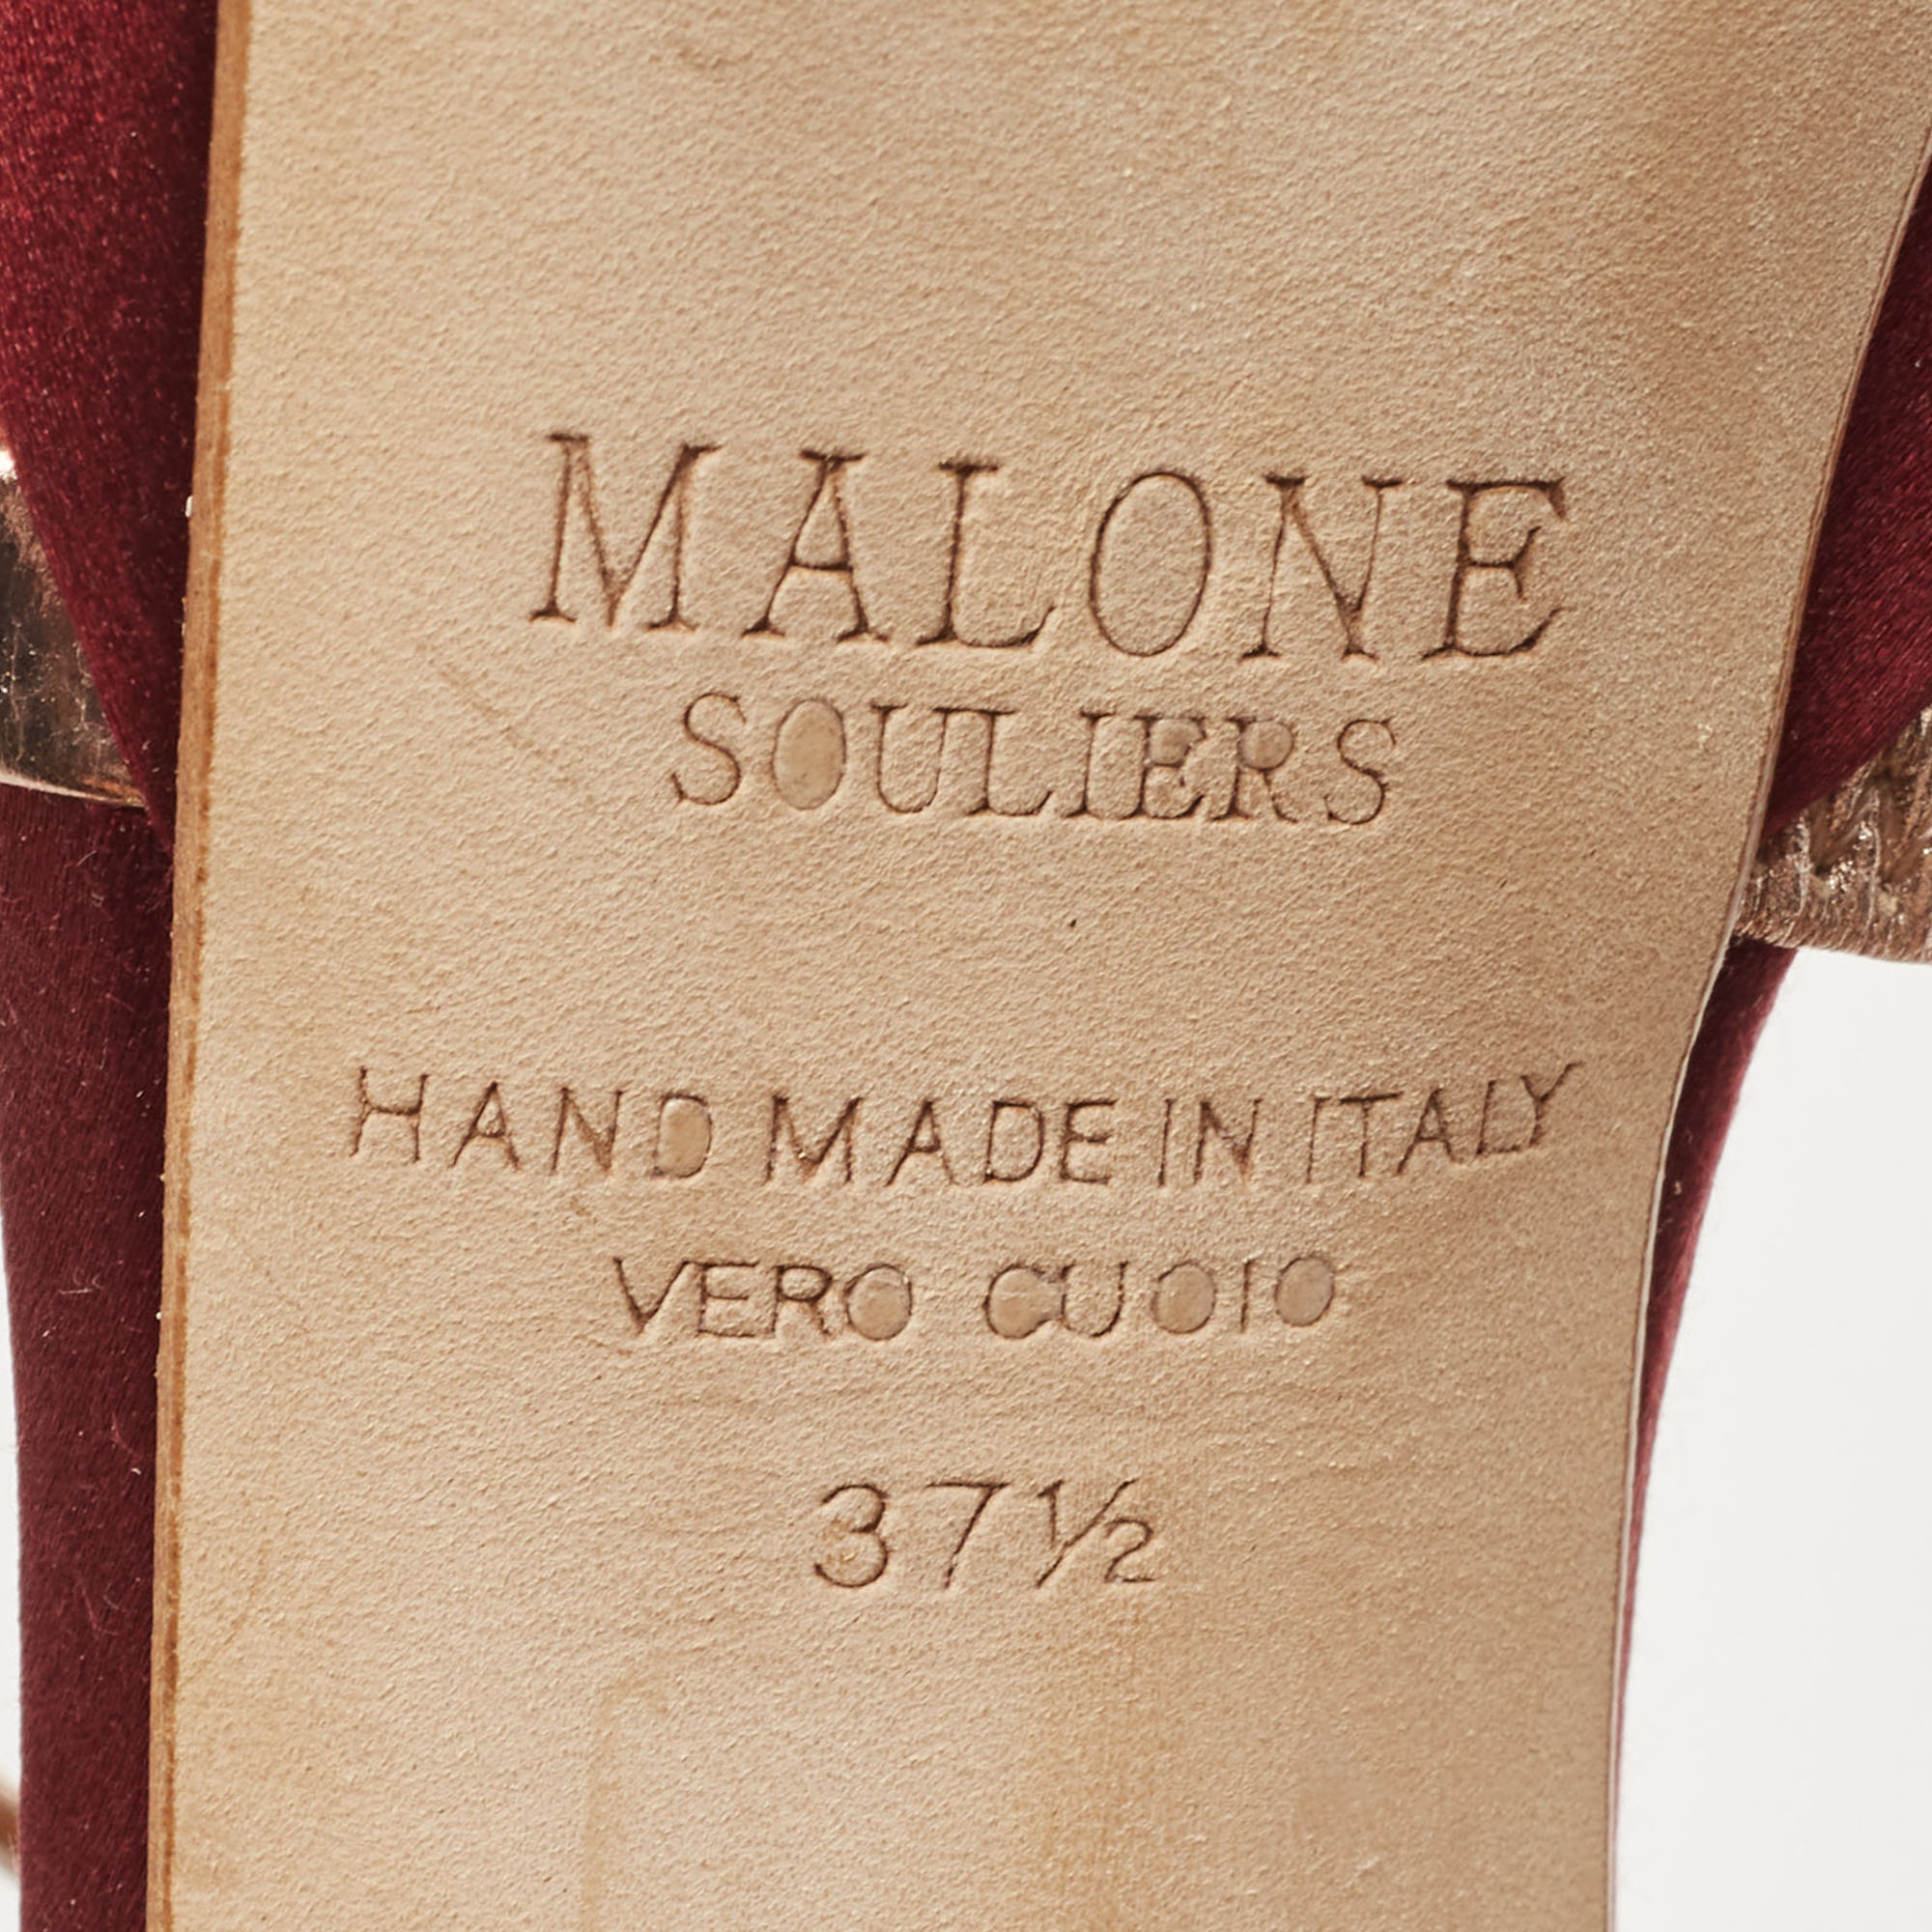 Malone Souliers Burgundy Satin Embellished Platform Sandals Size 37.5